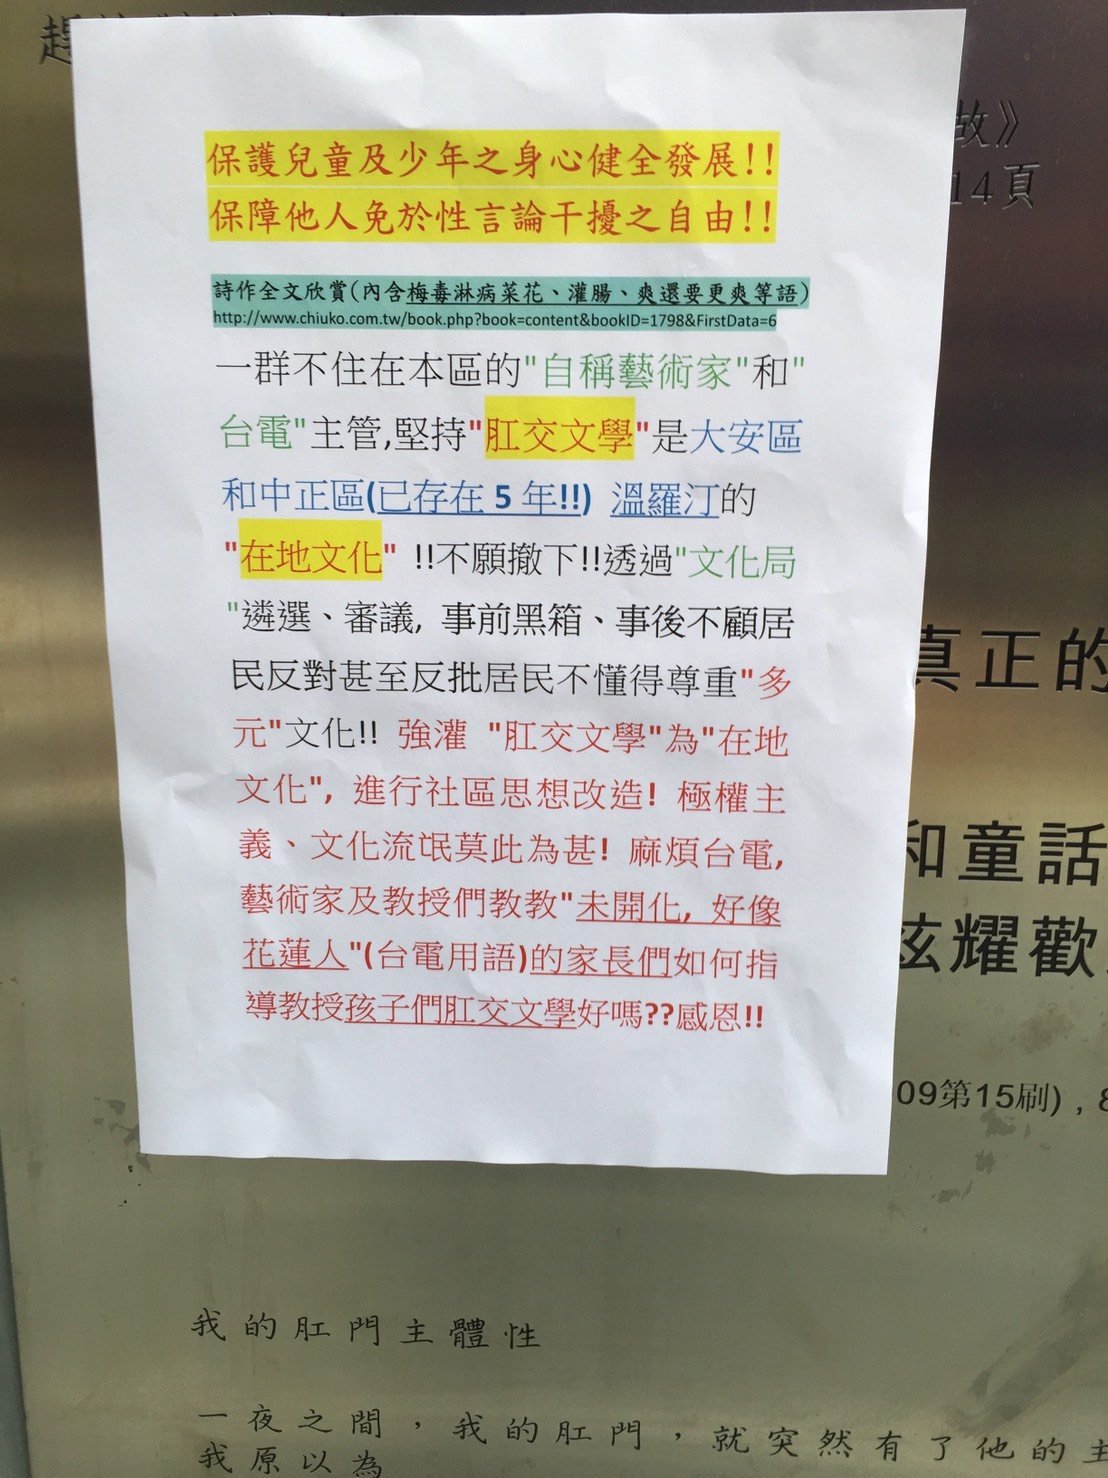 居民在《魚木的心跳》上貼紙張向台電抗議。 圖片來源：網友提供